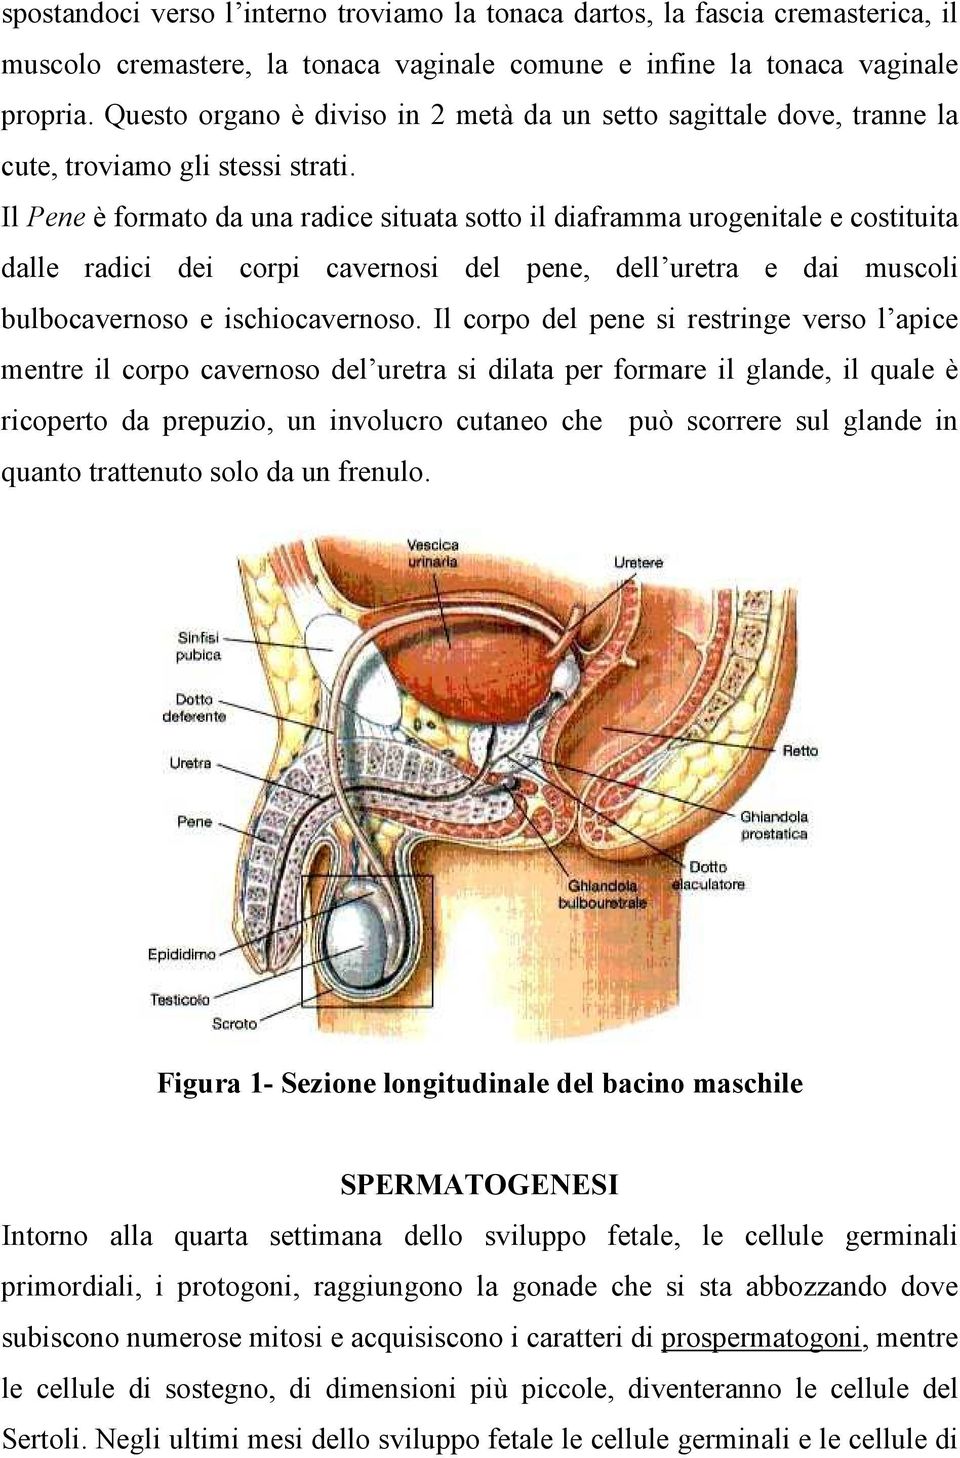 Il Pene è formato da una radice situata sotto il diaframma urogenitale e costituita dalle radici dei corpi cavernosi del pene, dell uretra e dai muscoli bulbocavernoso e ischiocavernoso.